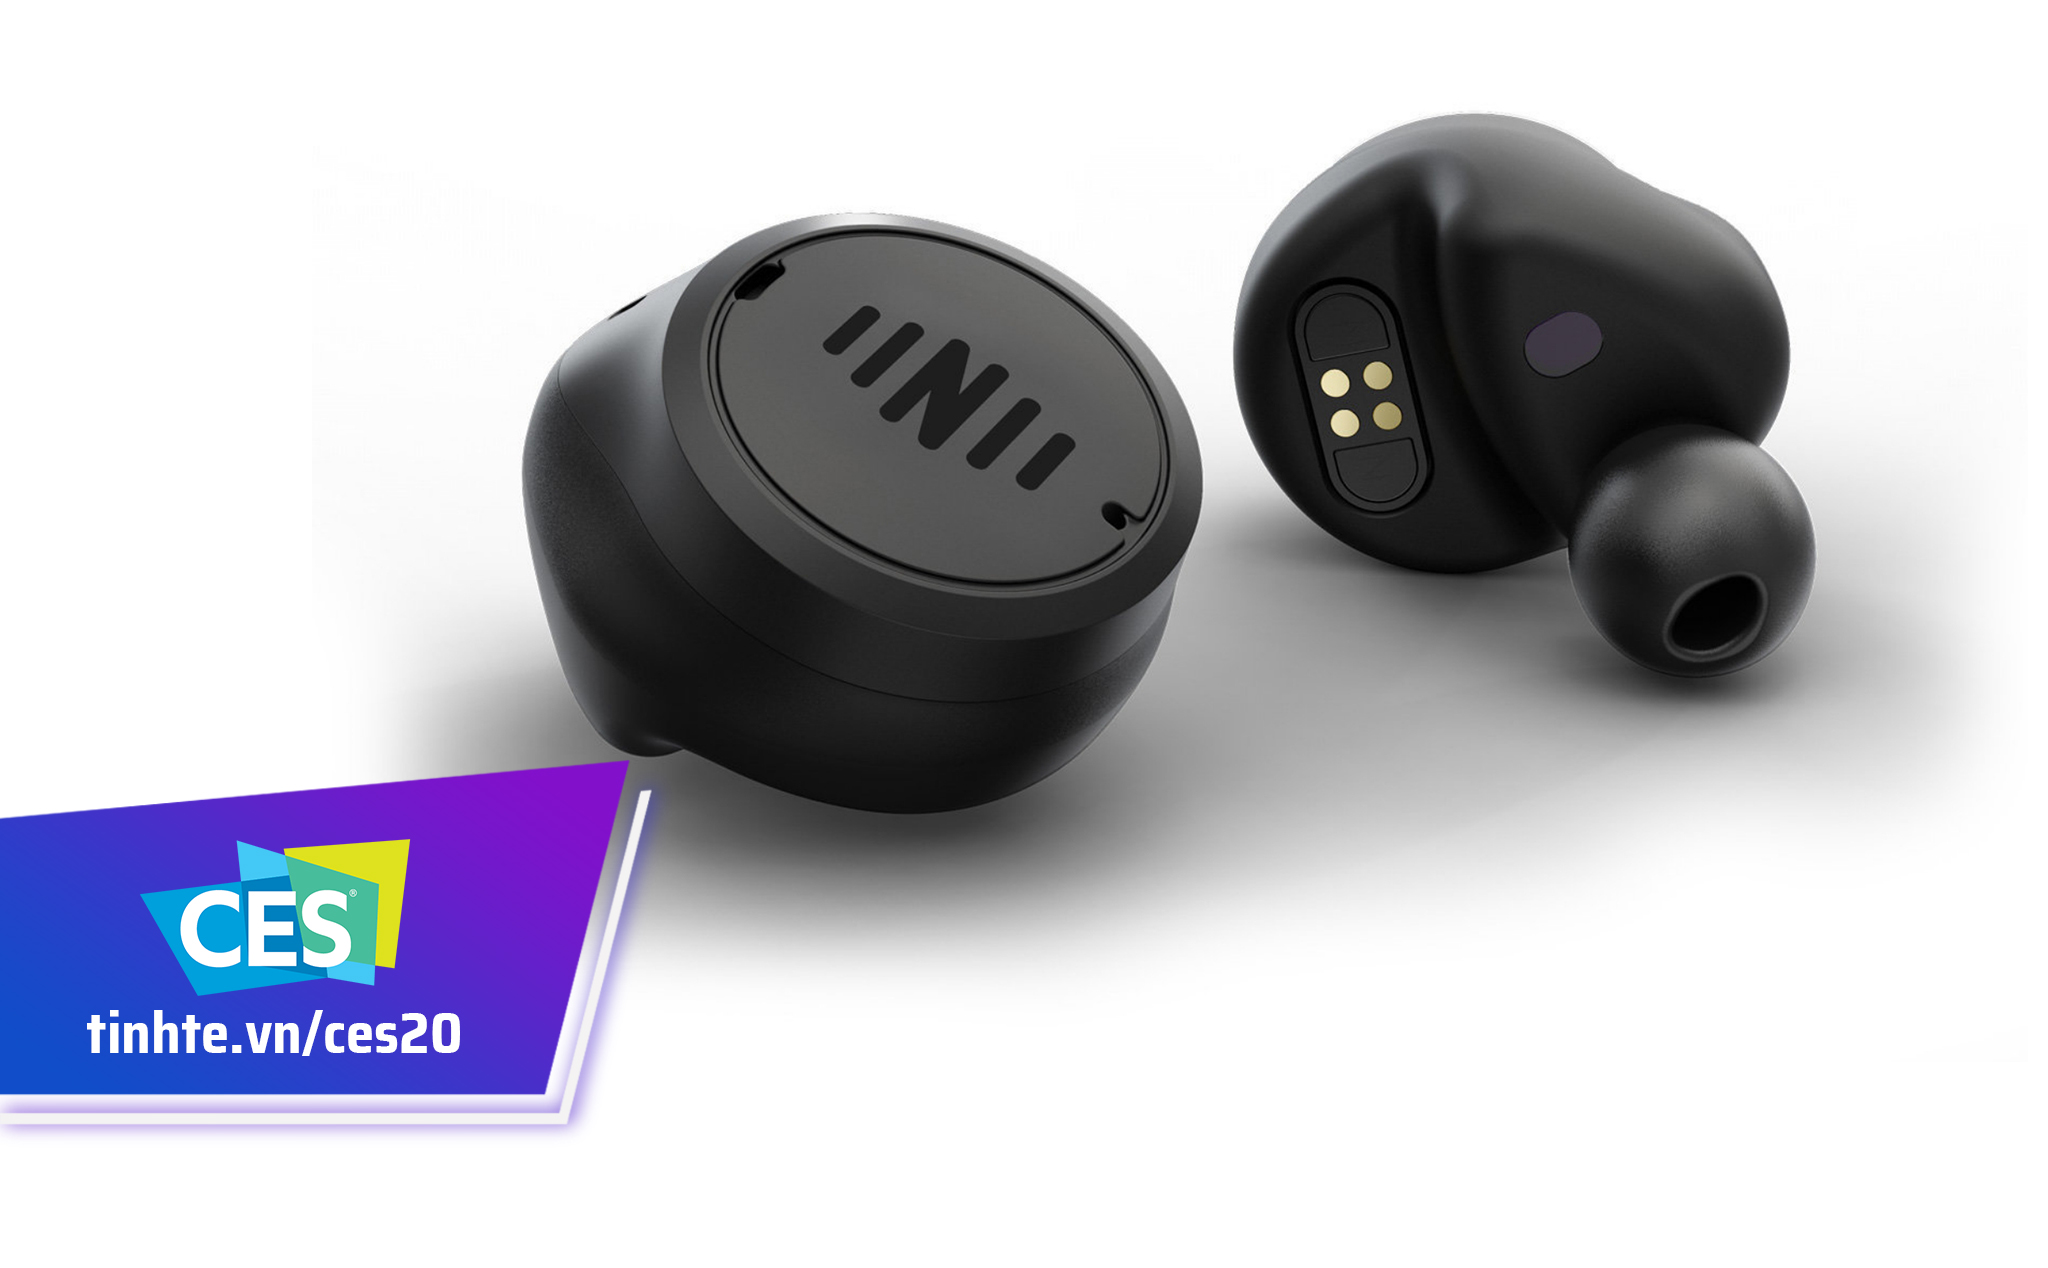 #CES20: Nuheara IQbuds2 MAX, tai nghe True-Wireless trợ thính thông minh, chống ồn, giá 399 USD